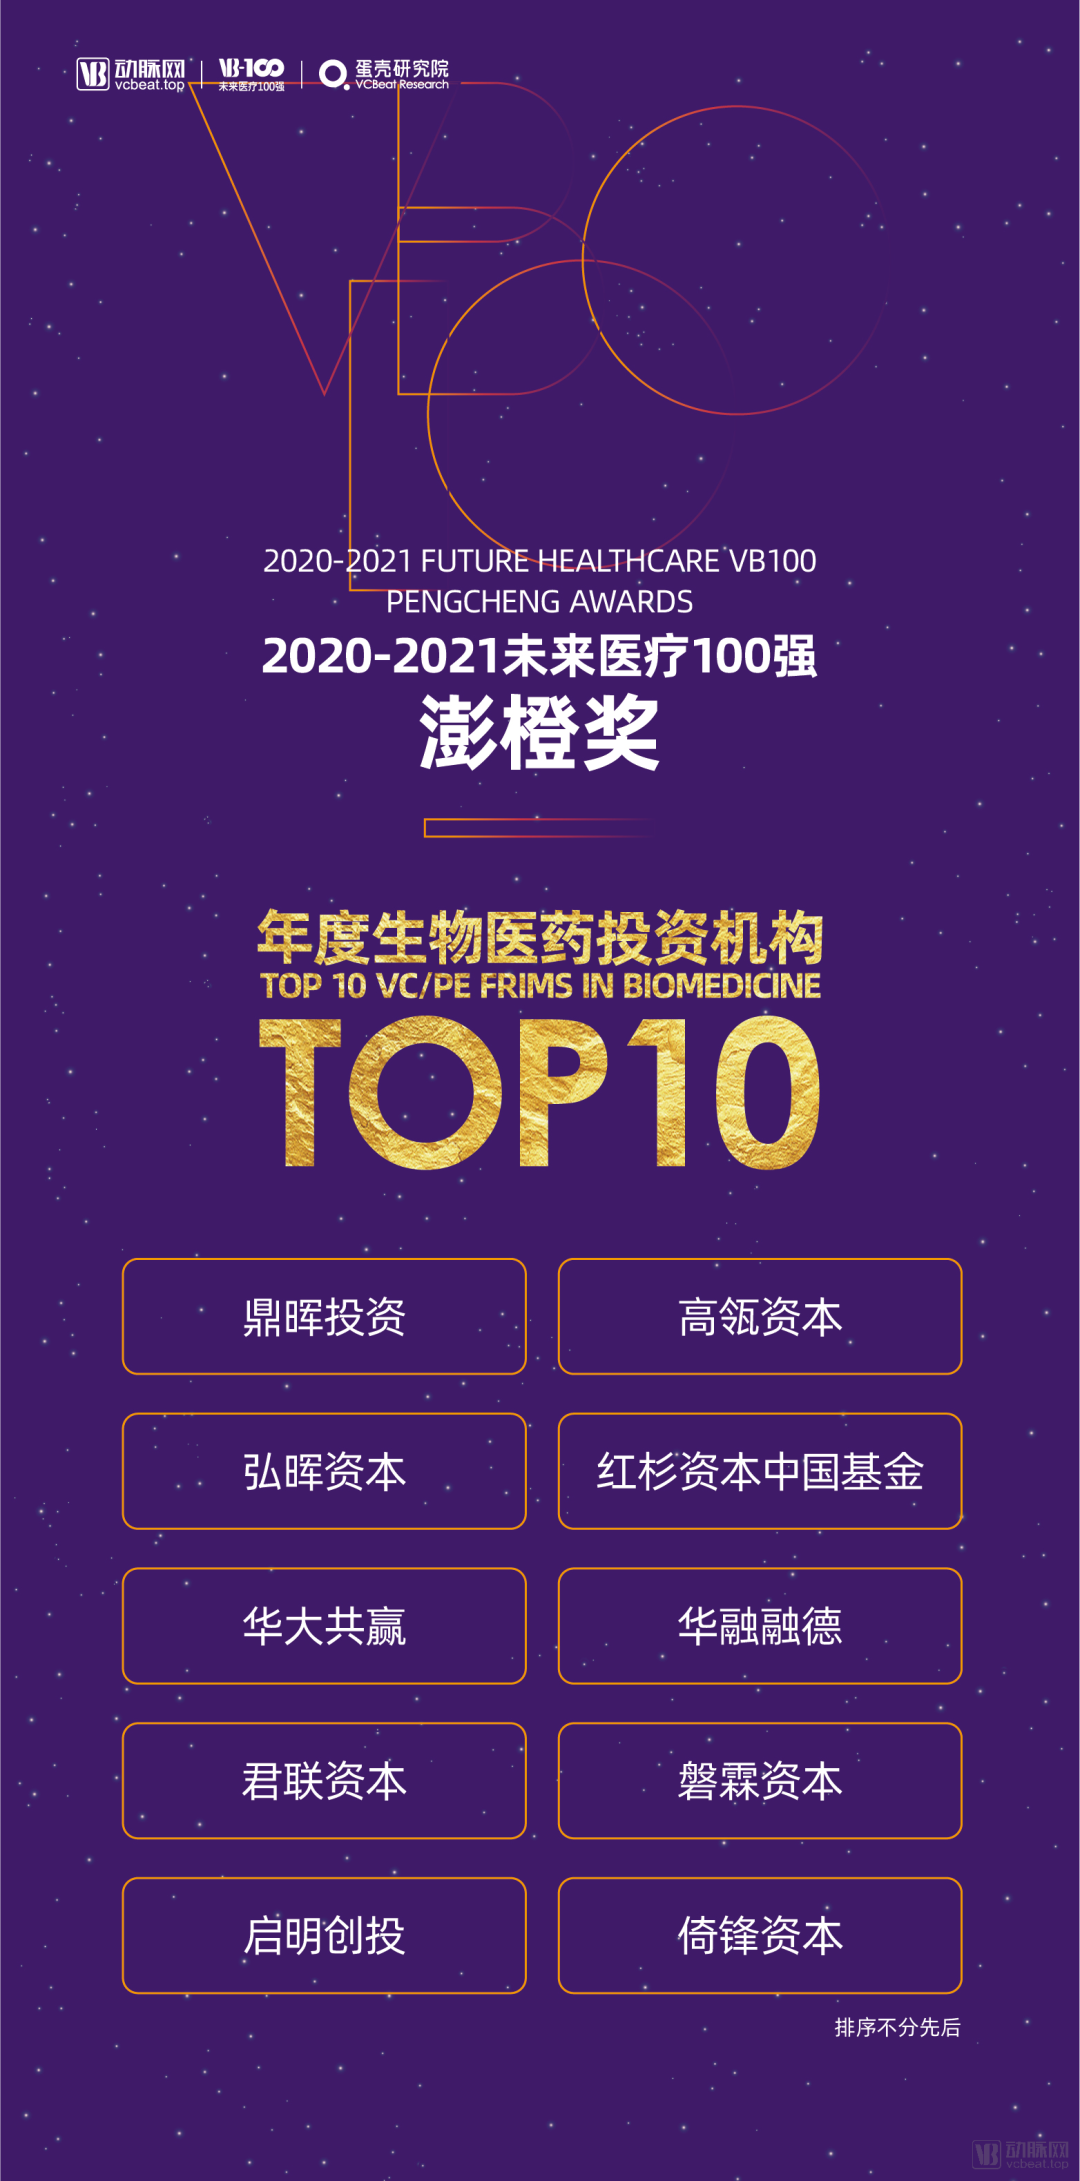 华融融德荣获VB100“年度生物医药投资机构TOP10”大奖